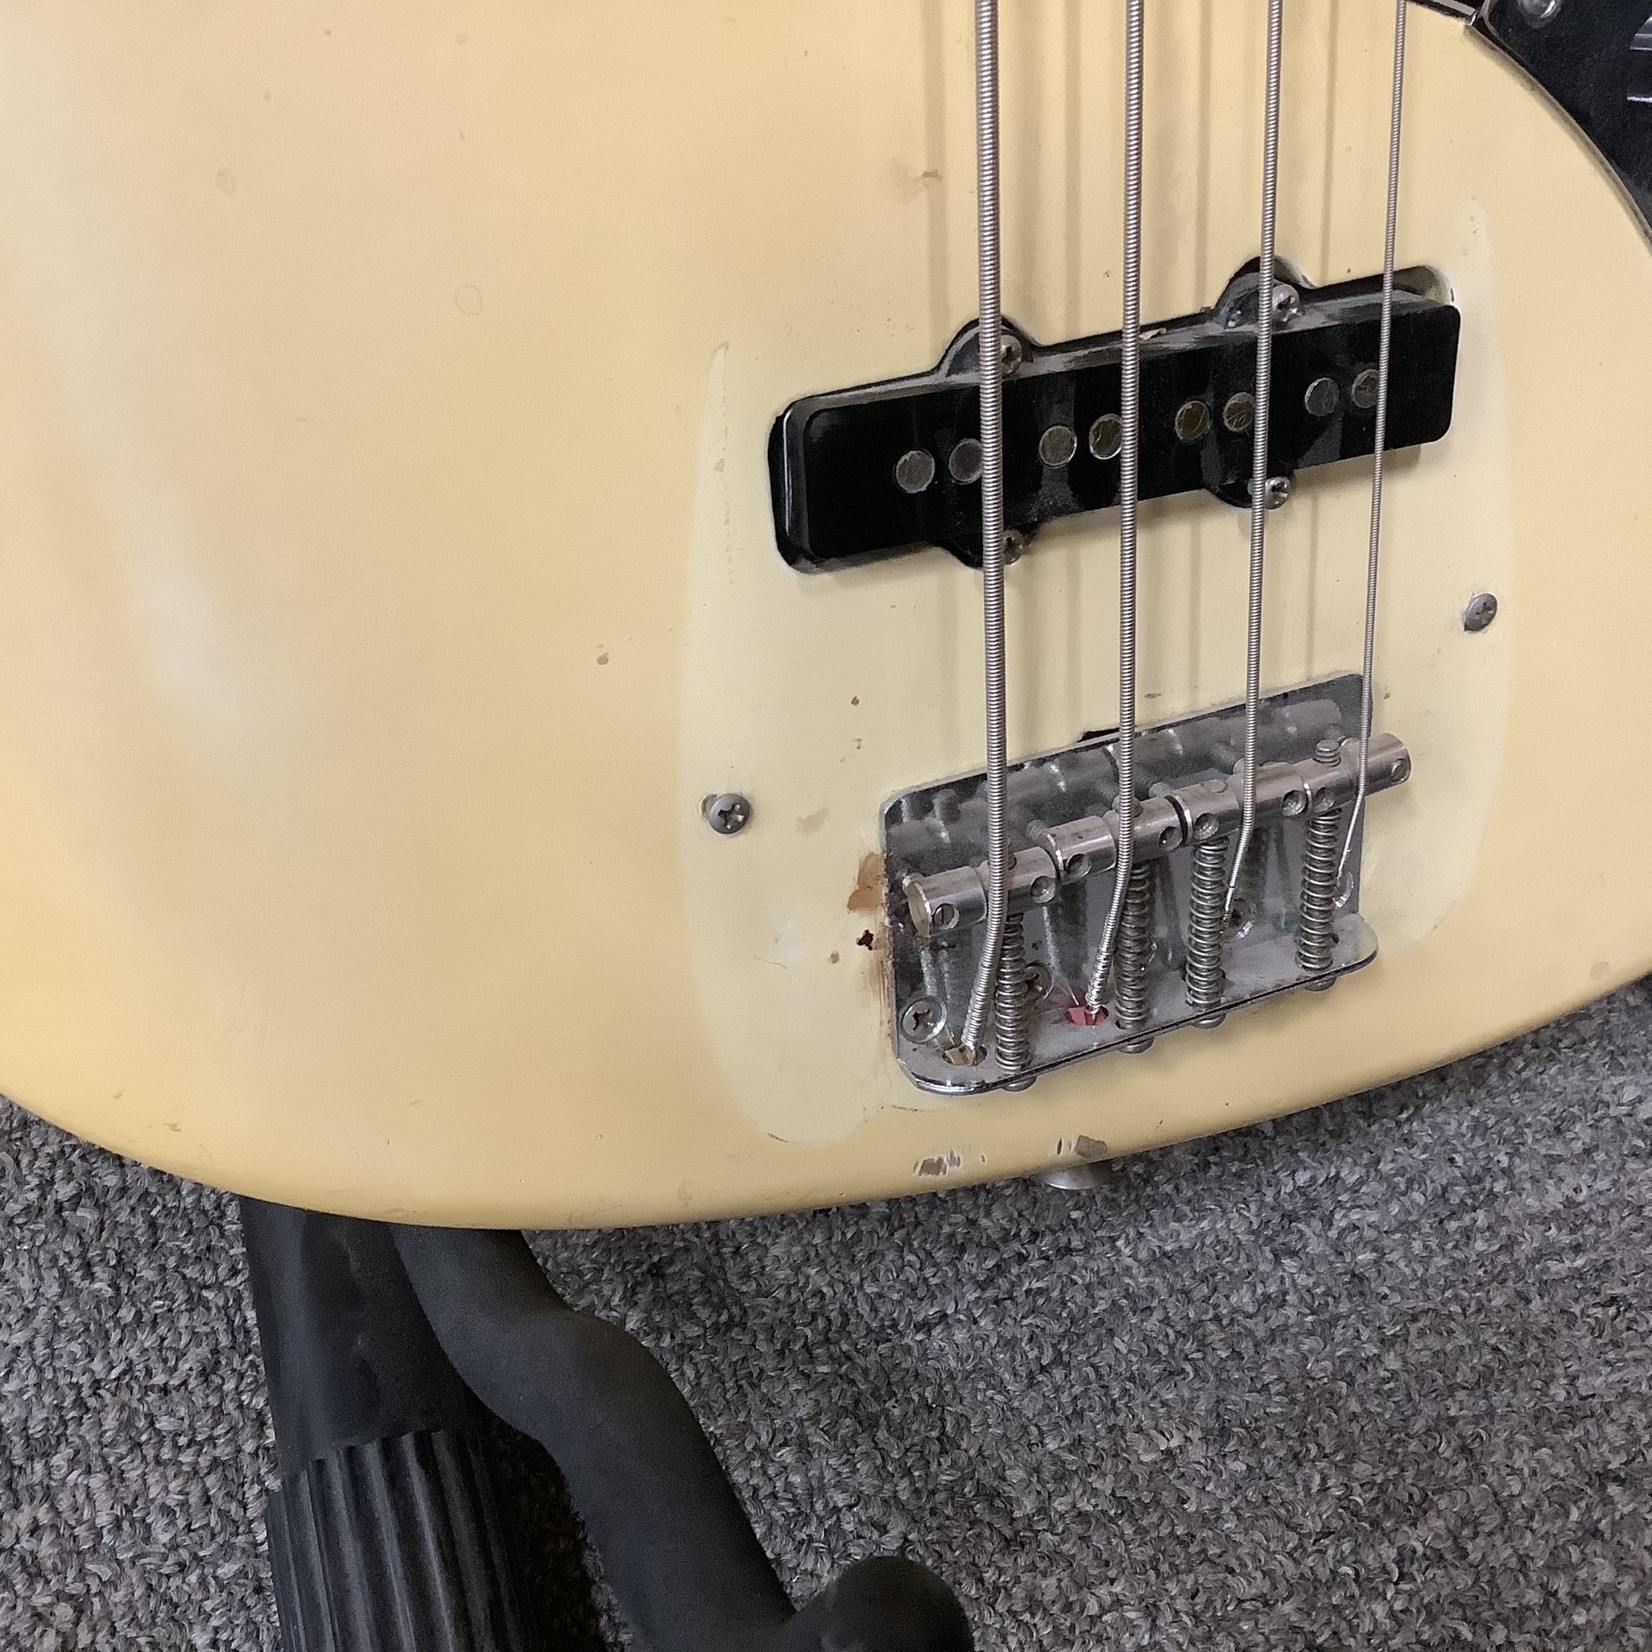 Fender 1976 Fender Jazz Bass Blonde Maple Neck White Block Inlays